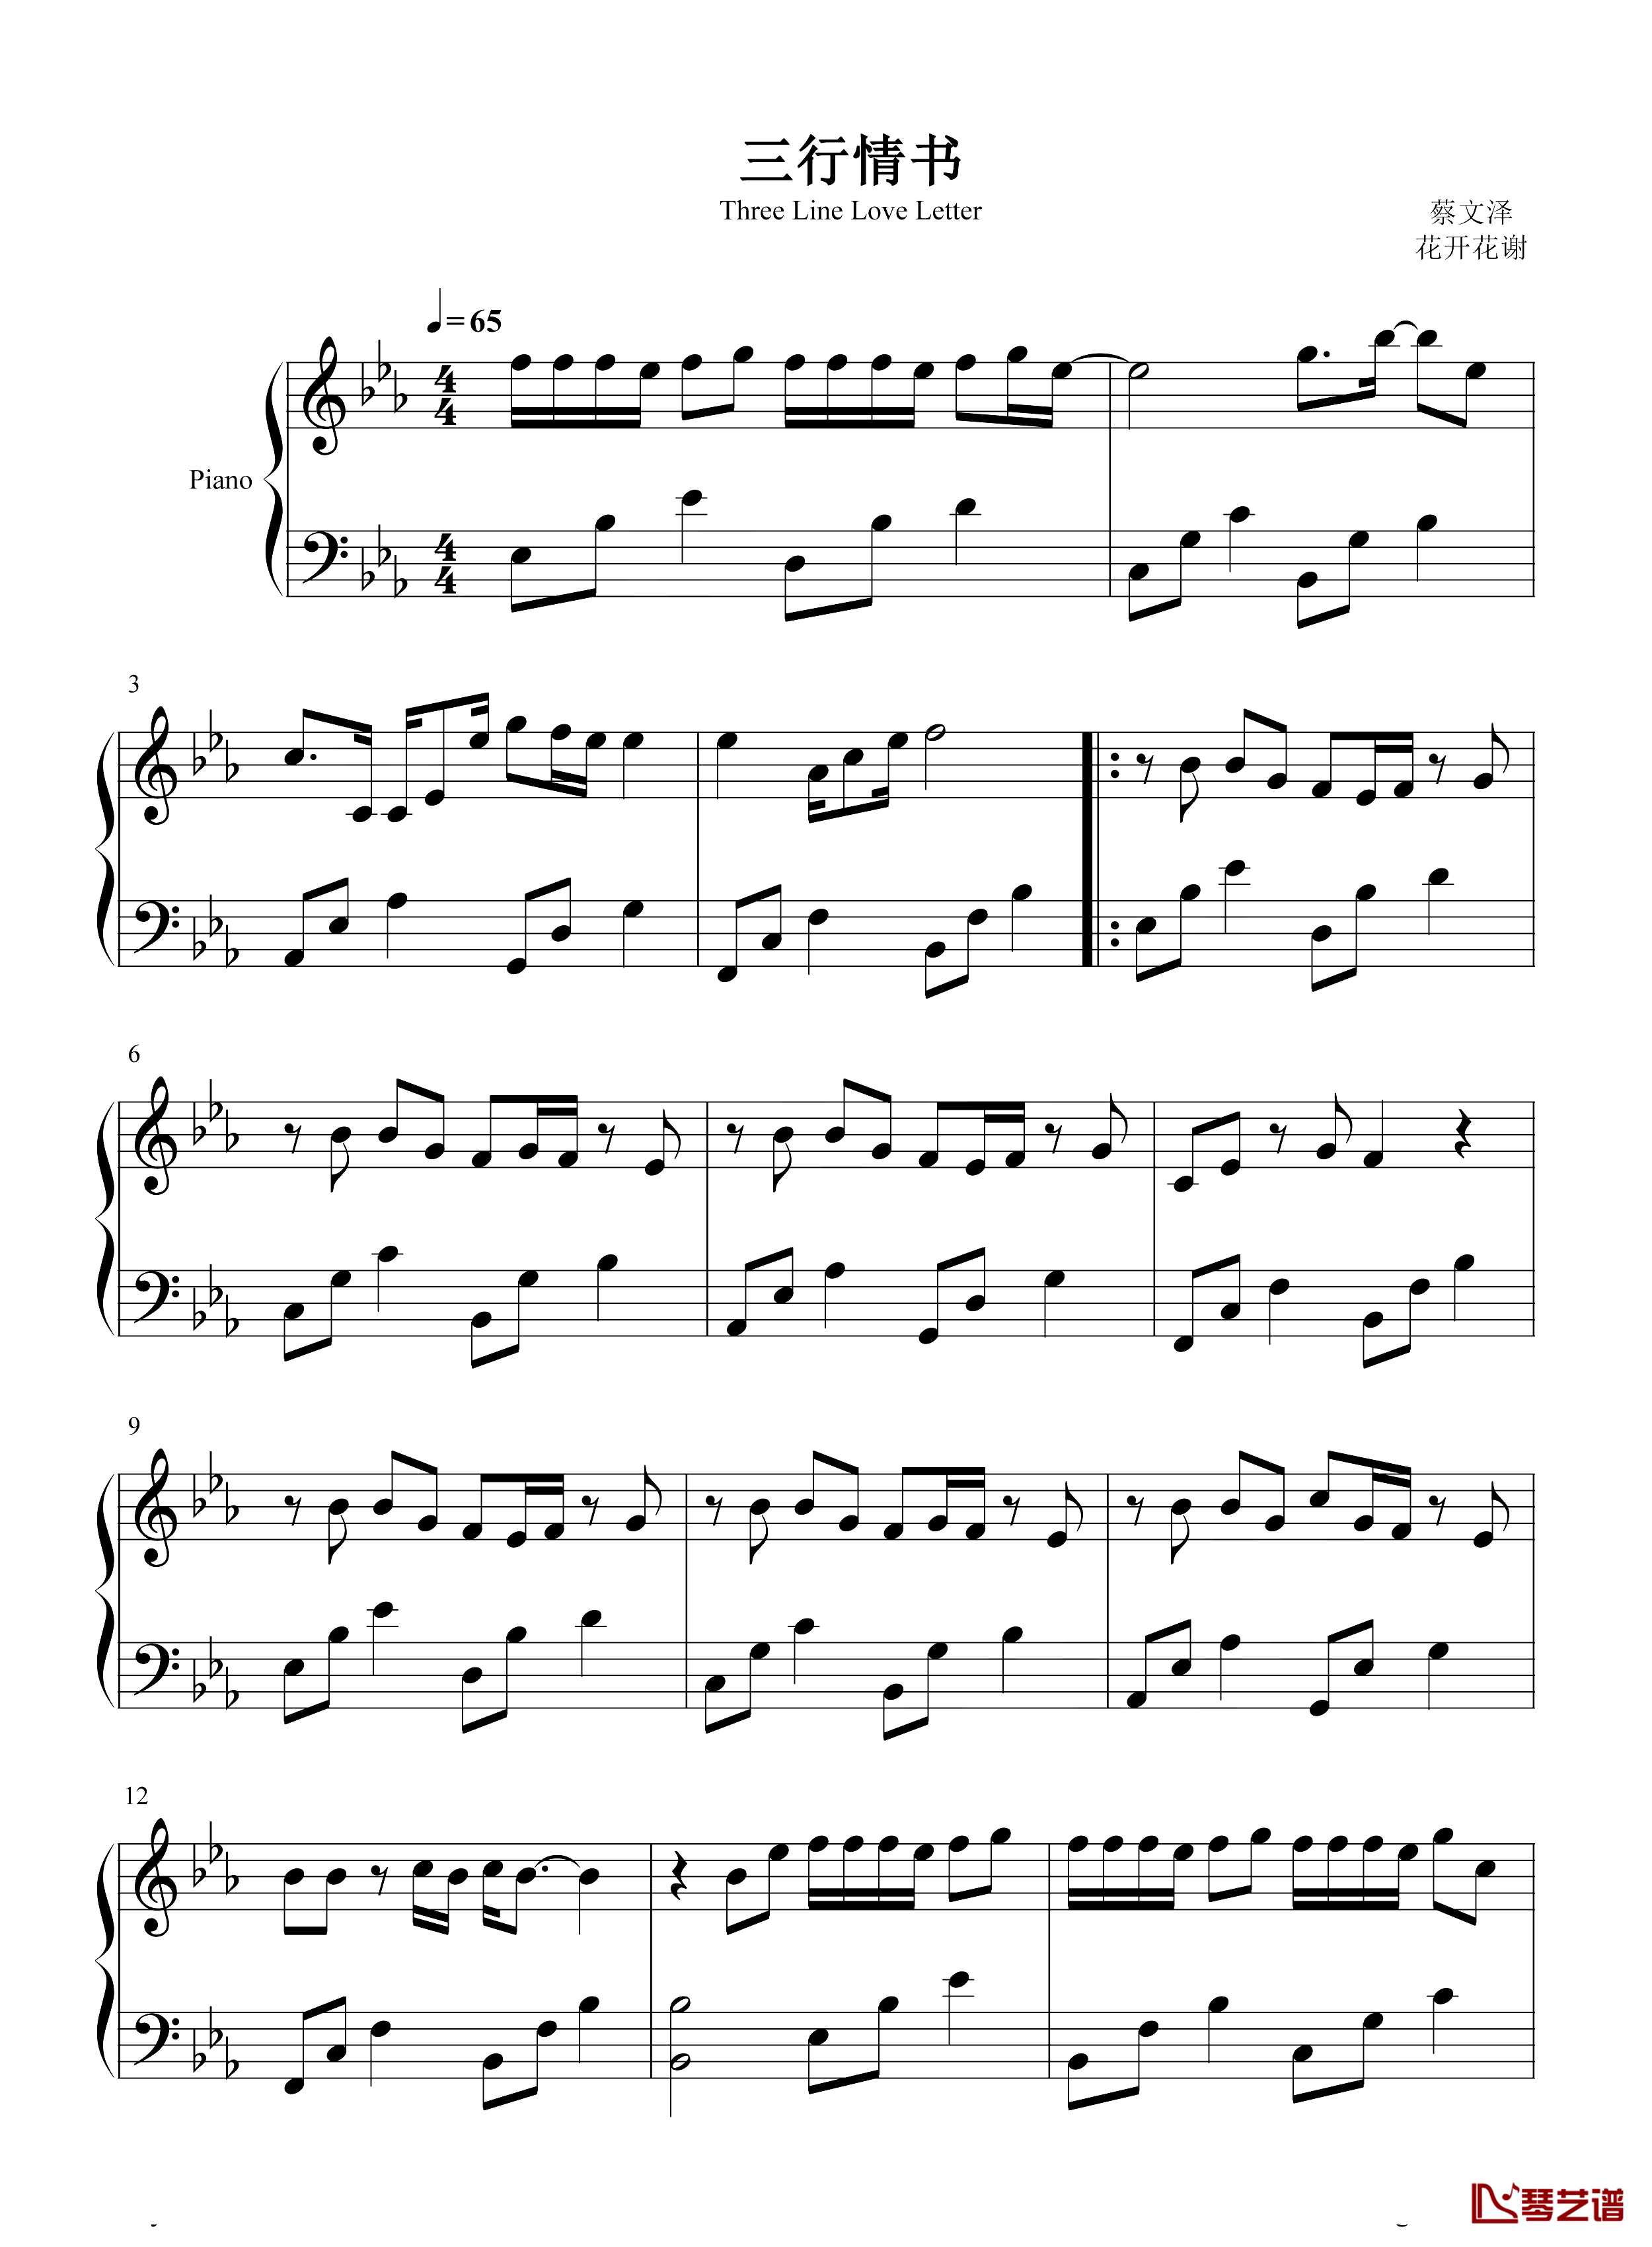 三行情书钢琴谱-蔡文泽-只是我对你的喜欢三行也写不完1